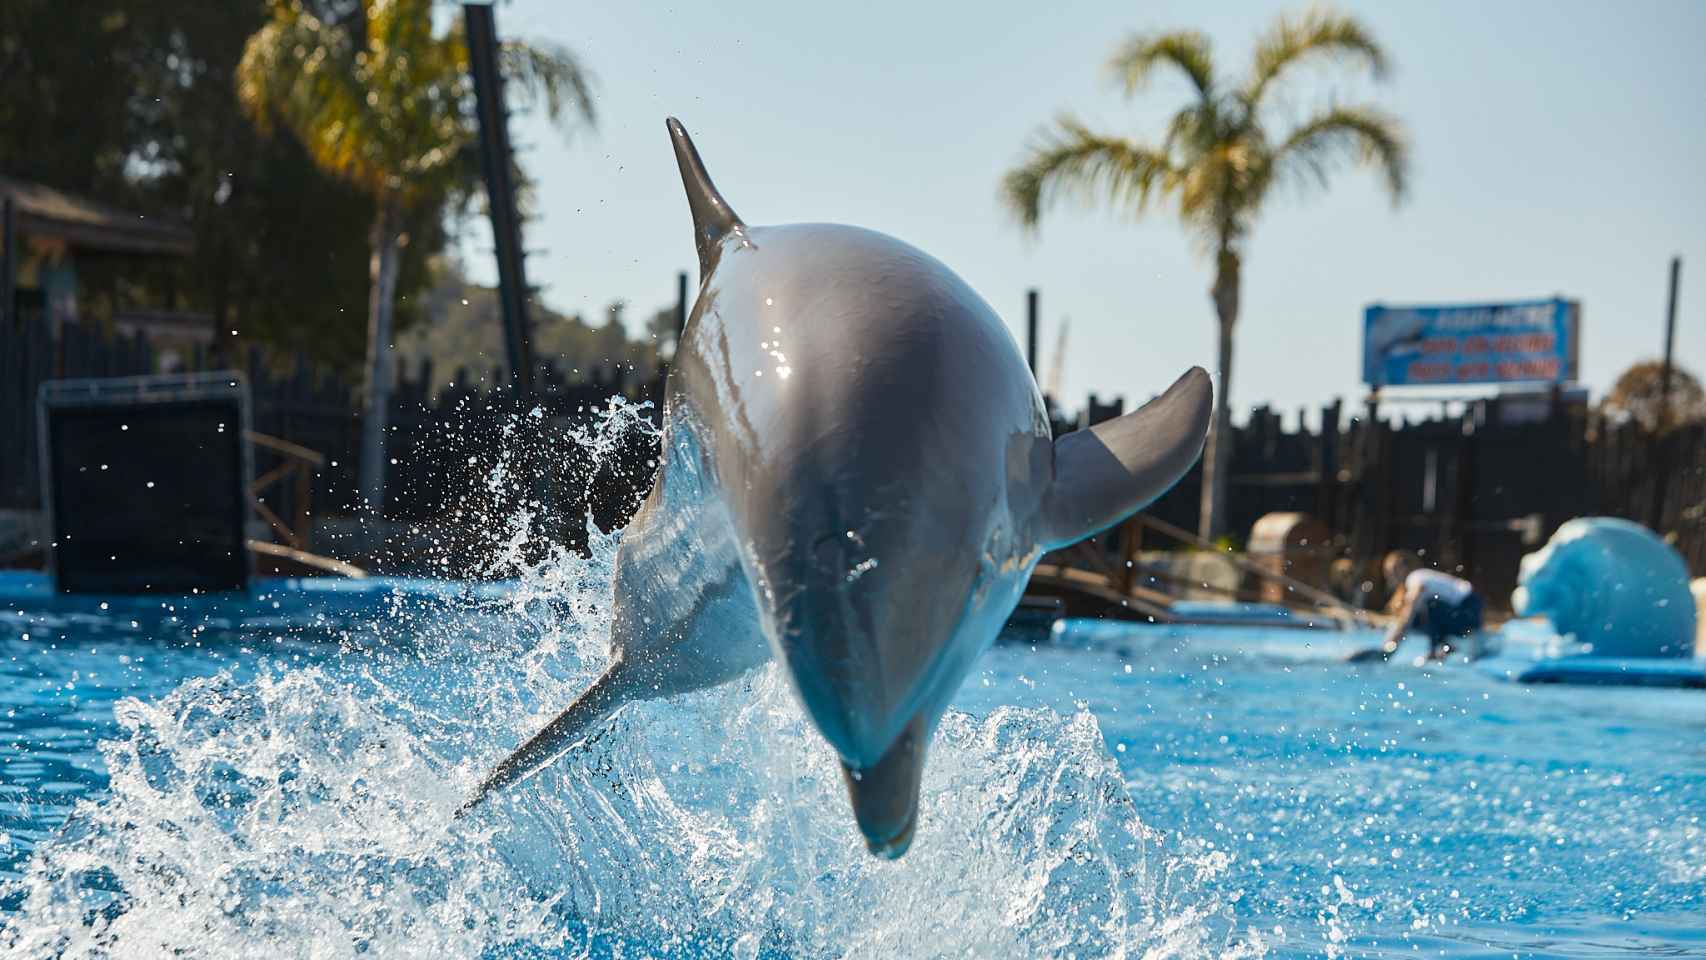 Mundomar abre sus puertas el próximo 23 de marzo con delfines, leones marinos y mamíferos  exóticos